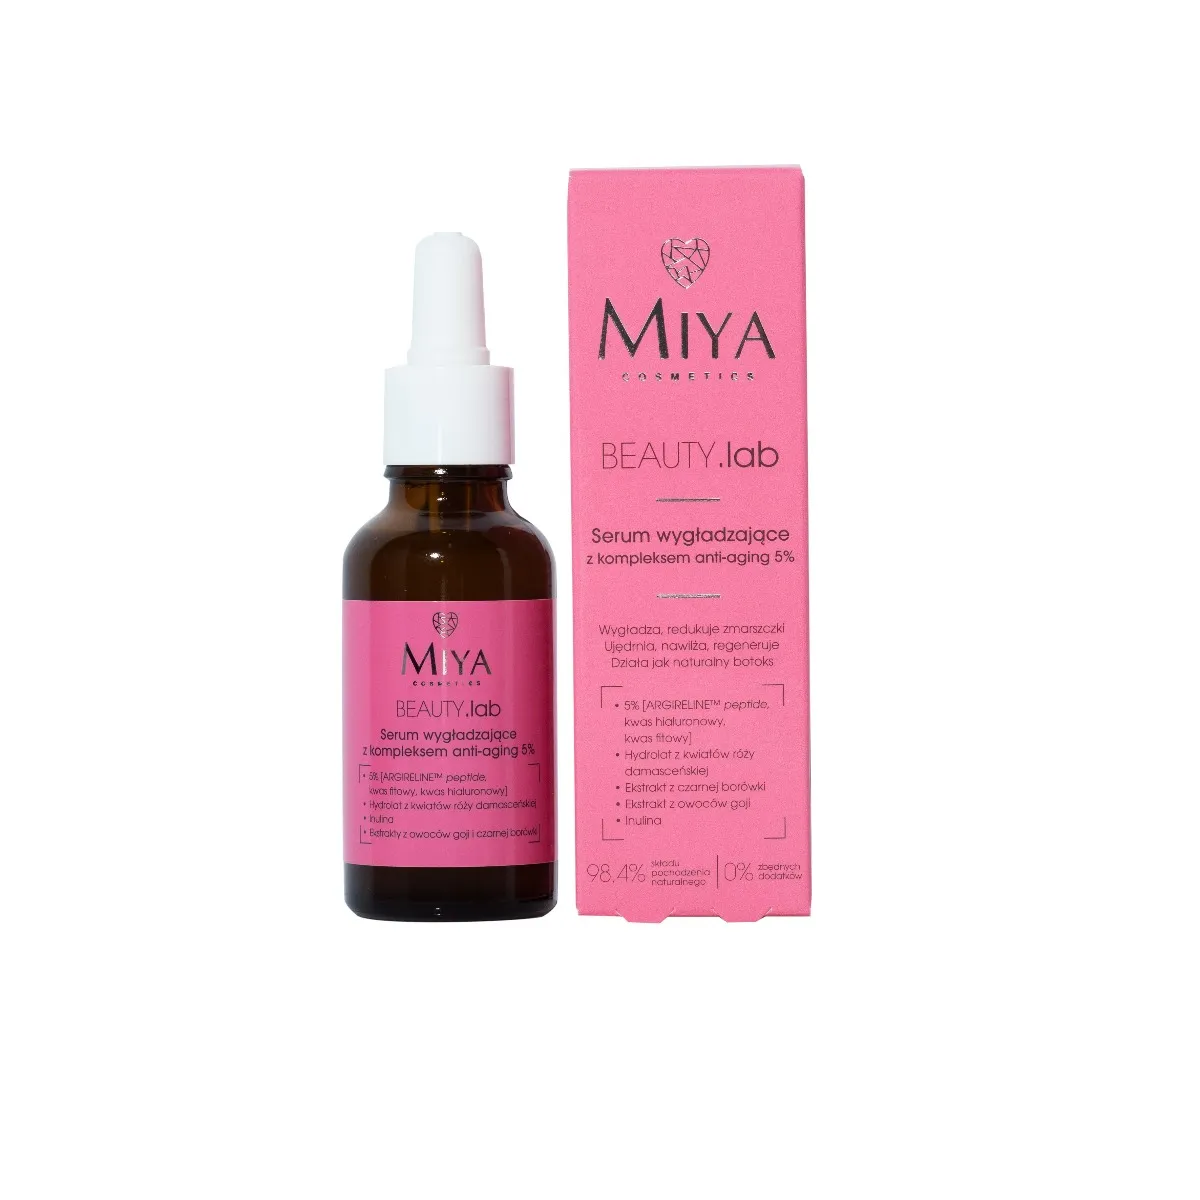 Miya Cosmetics BEAUTY.lab serum wygładzające z kompleksem anti-aging 5%, 30 ml